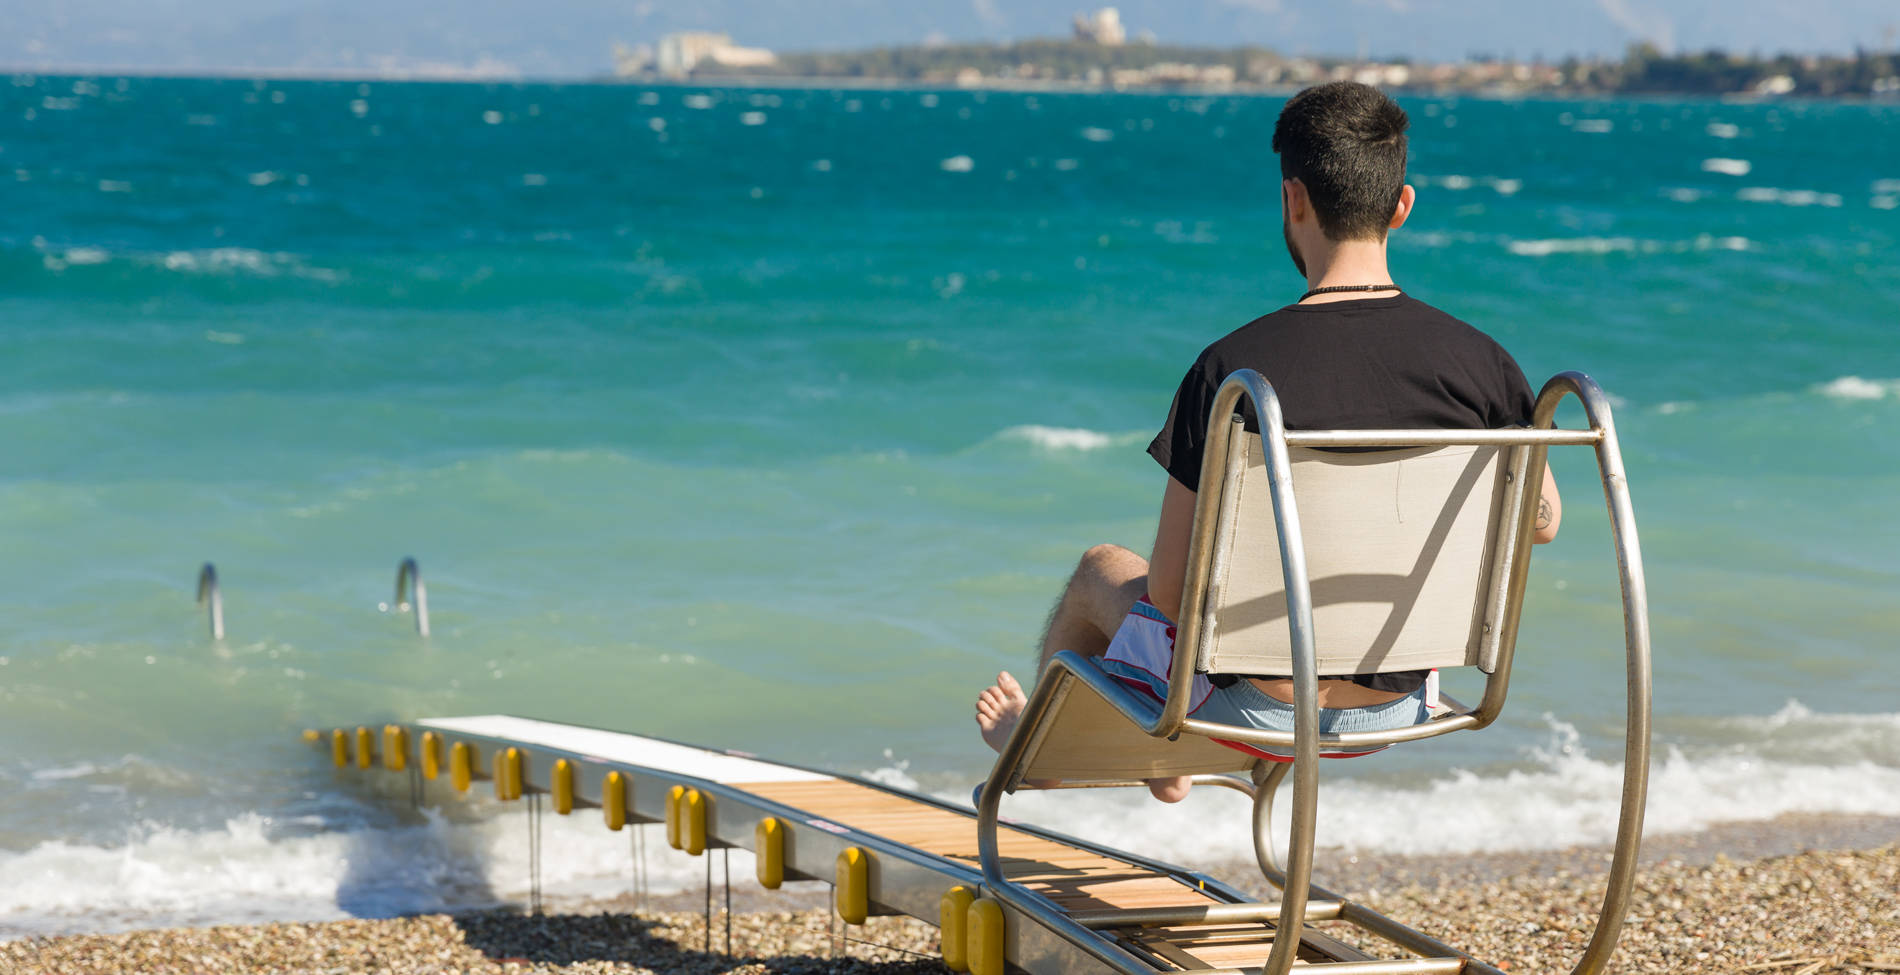 Η ελληνική ιδέα που επιτρέπει σε άτομα με αναπηρία να απολαμβάνουν τη θάλασσα